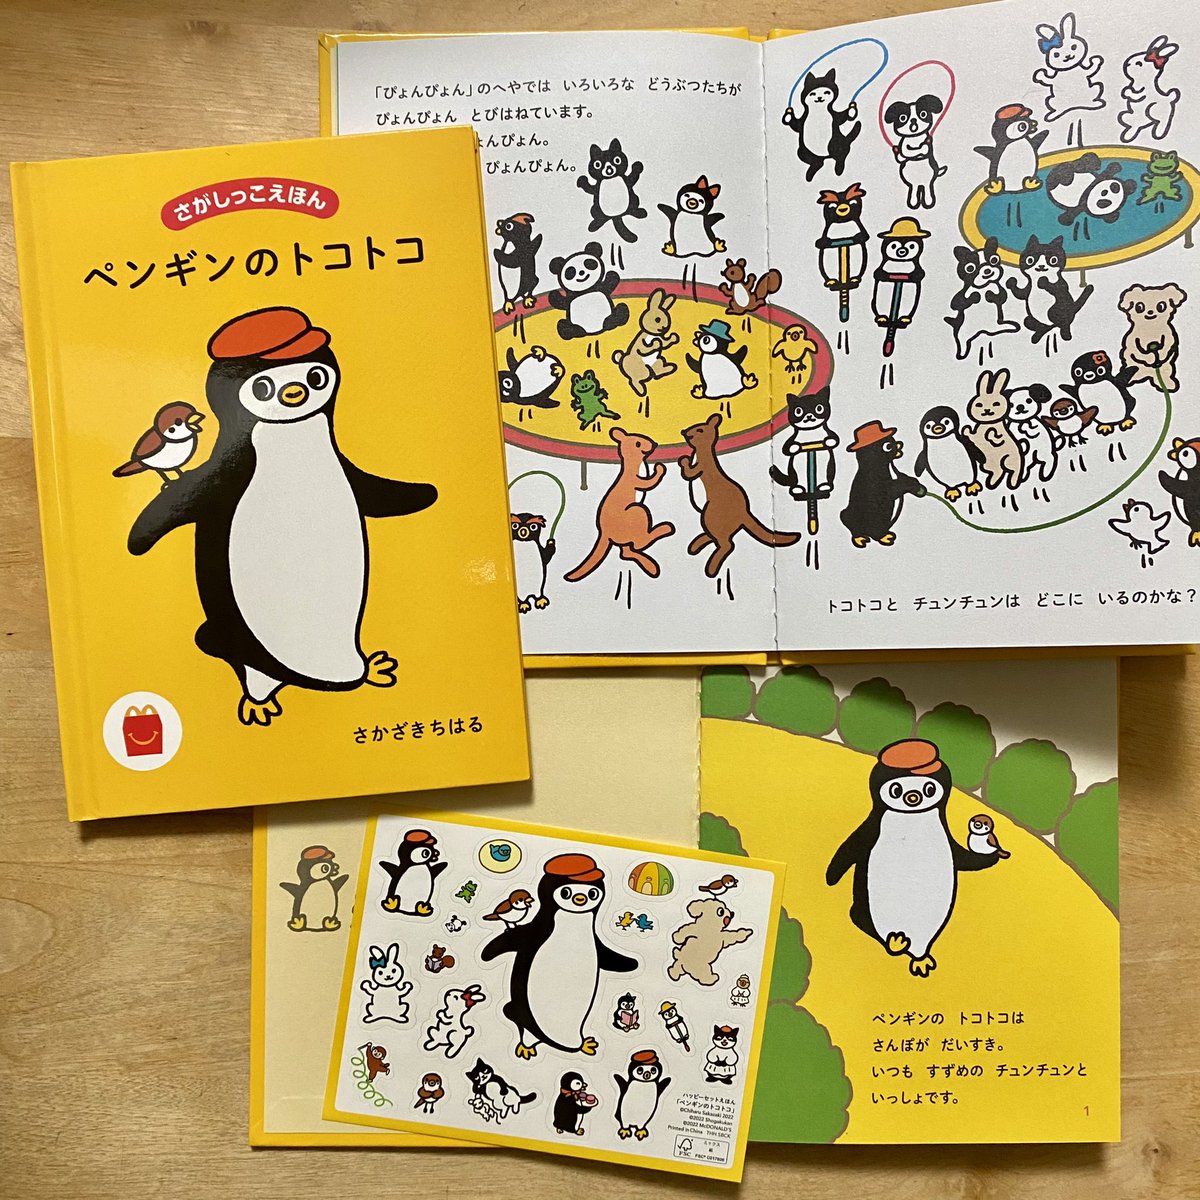 マクドナルドのハッピーセットの絵本「ペンギンのトコトコ」を描きました。かわいい動物をみっちり詰め込んでみました。シールもついていてお得感。
ちなみにトコトコはヒゲペンギン。(Suicaのペンギンはアデリーペンギン)
9/2(金)から始まります!
#ハッピーセット 